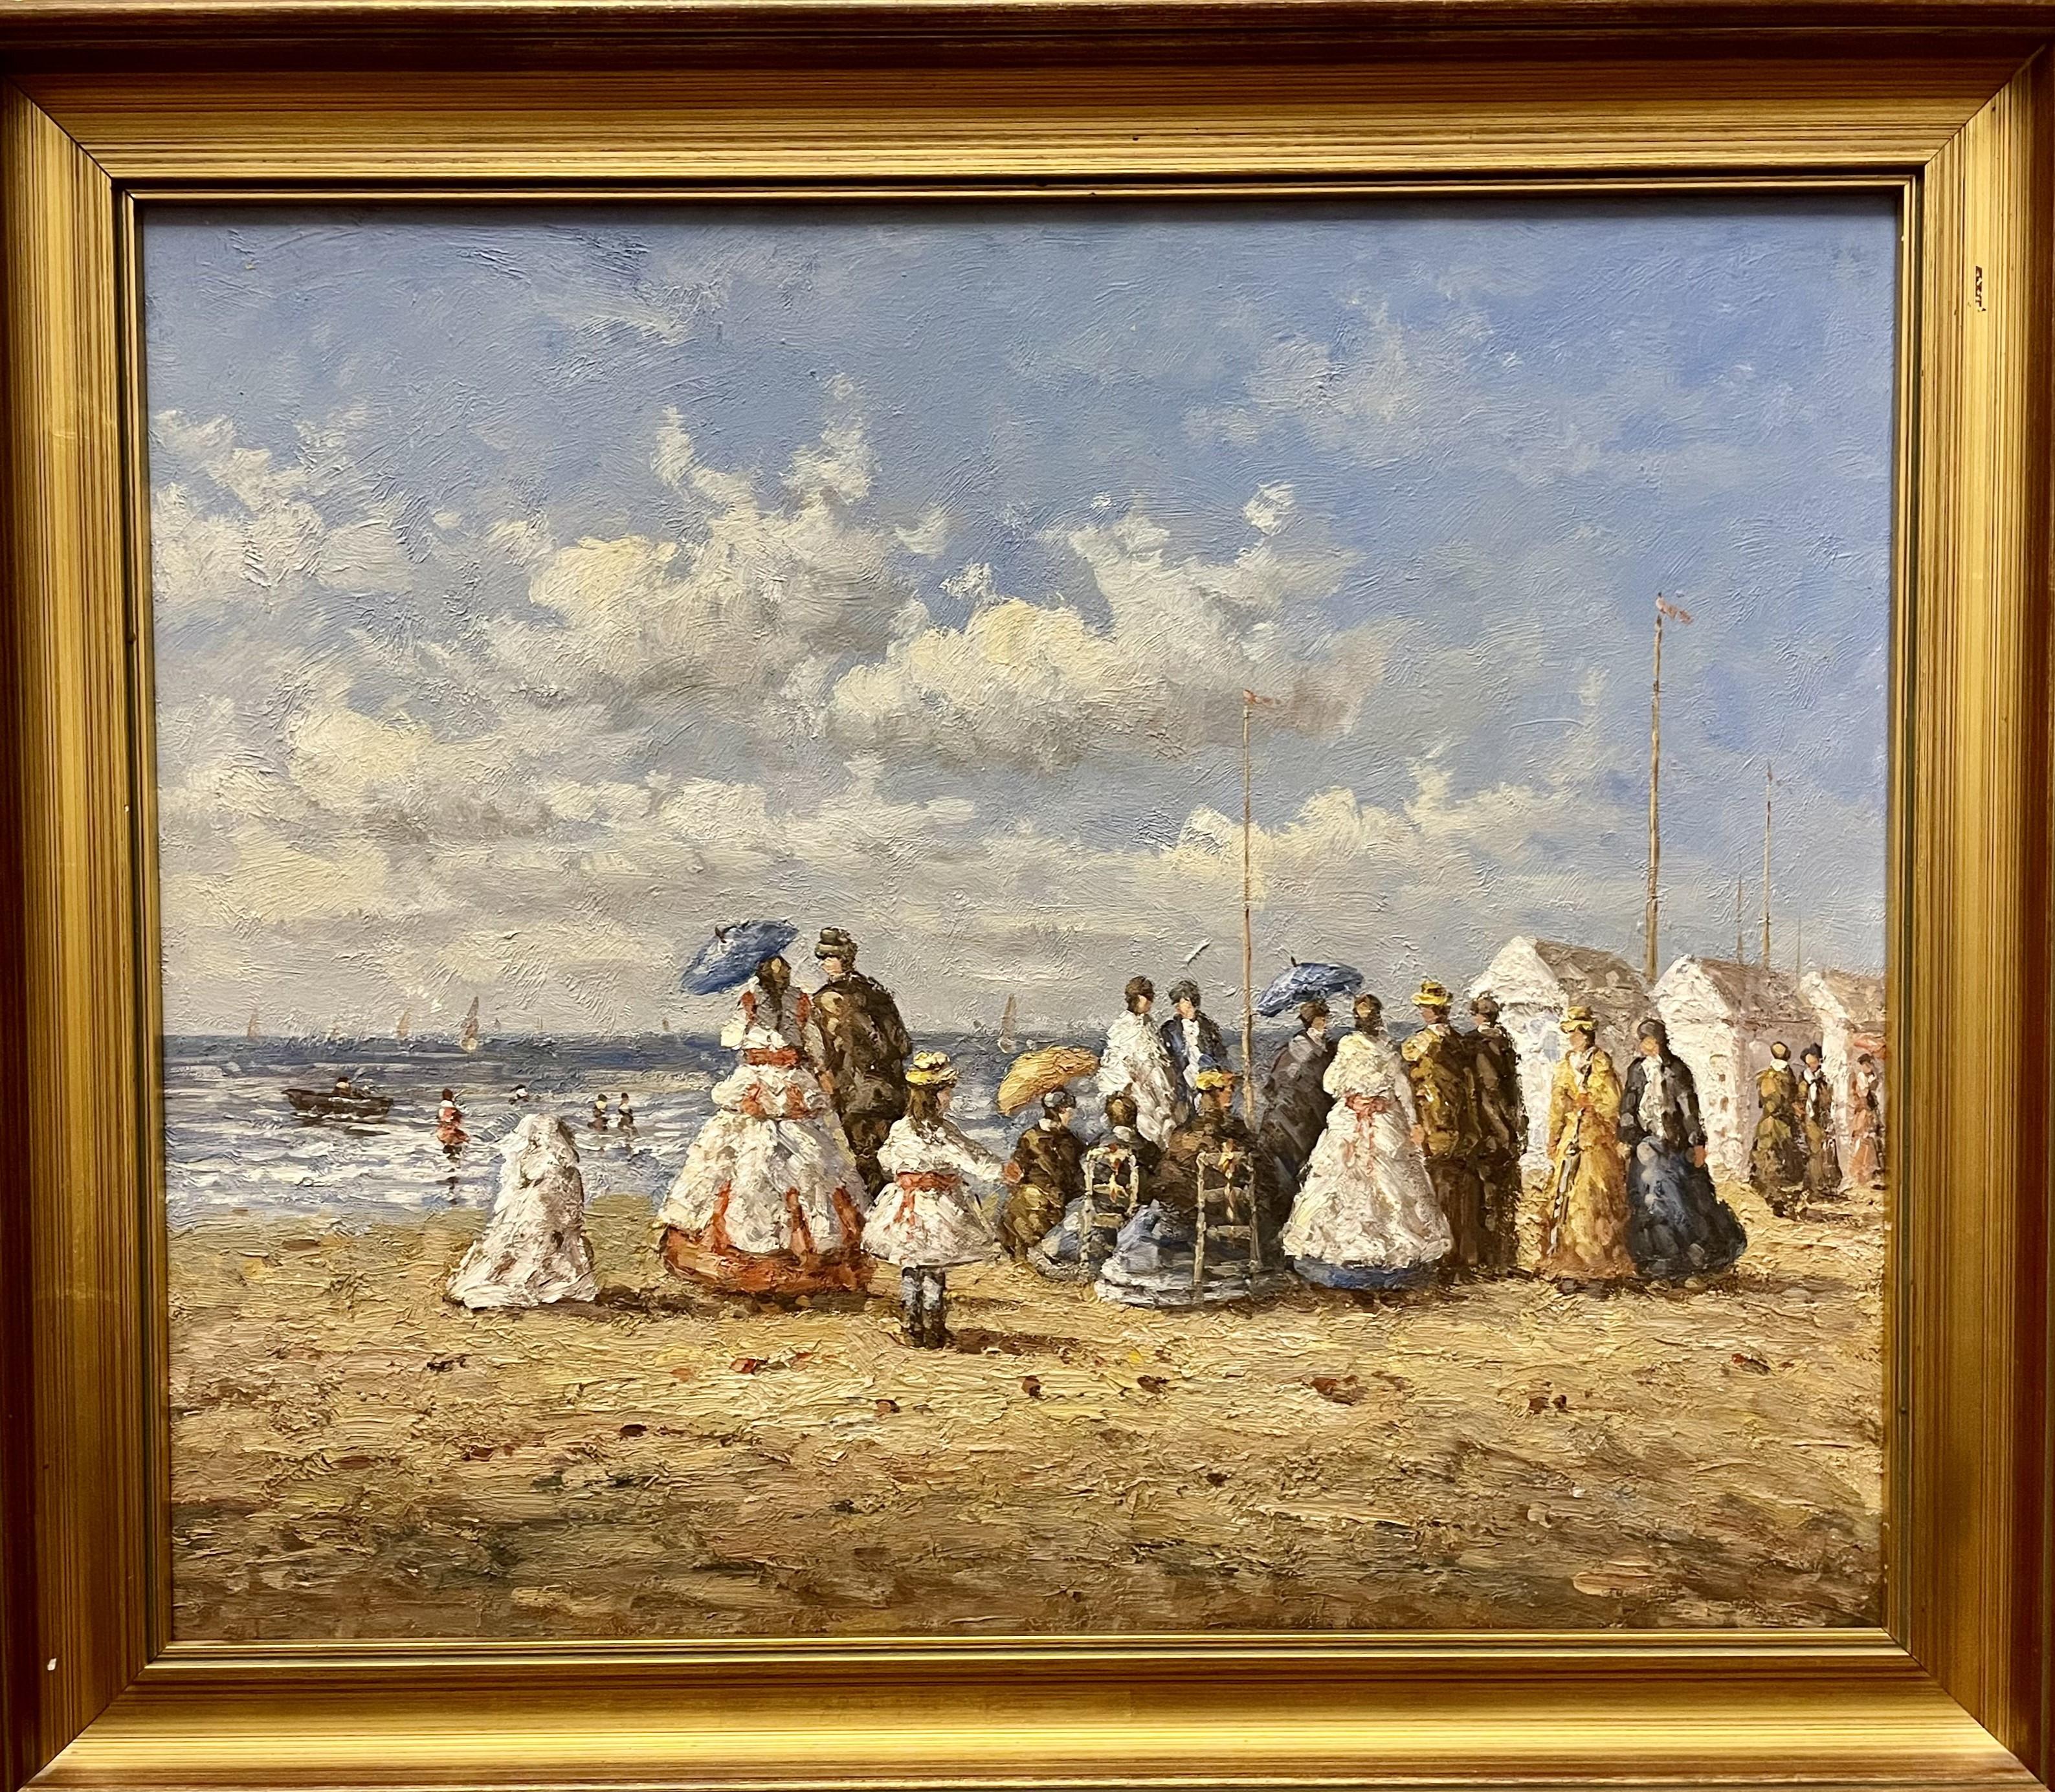 Edwardianische Strandszene, britisches Ölgemälde auf Leinwand, 20. Jahrhundert